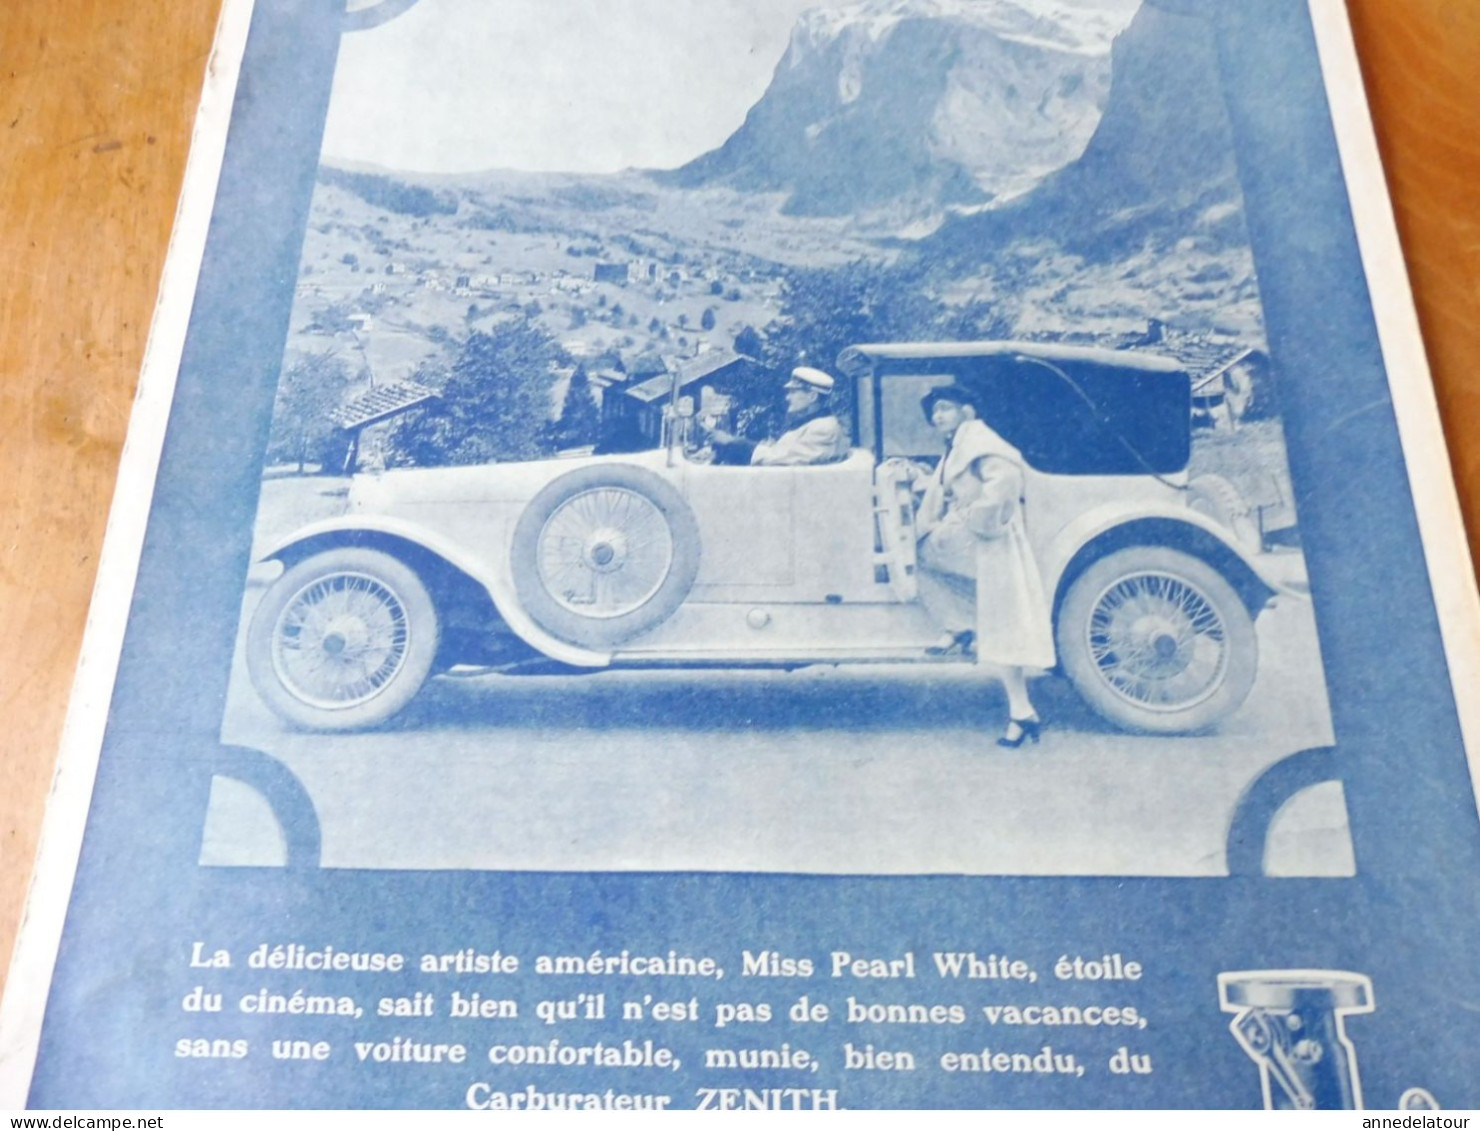 Miss PEARL WHITE  Et Sa Voiture     Affiche Publicitaire Originale De 1924   Dim. 38x 29cm - Carburateur ZENITH - Placas De Cartón